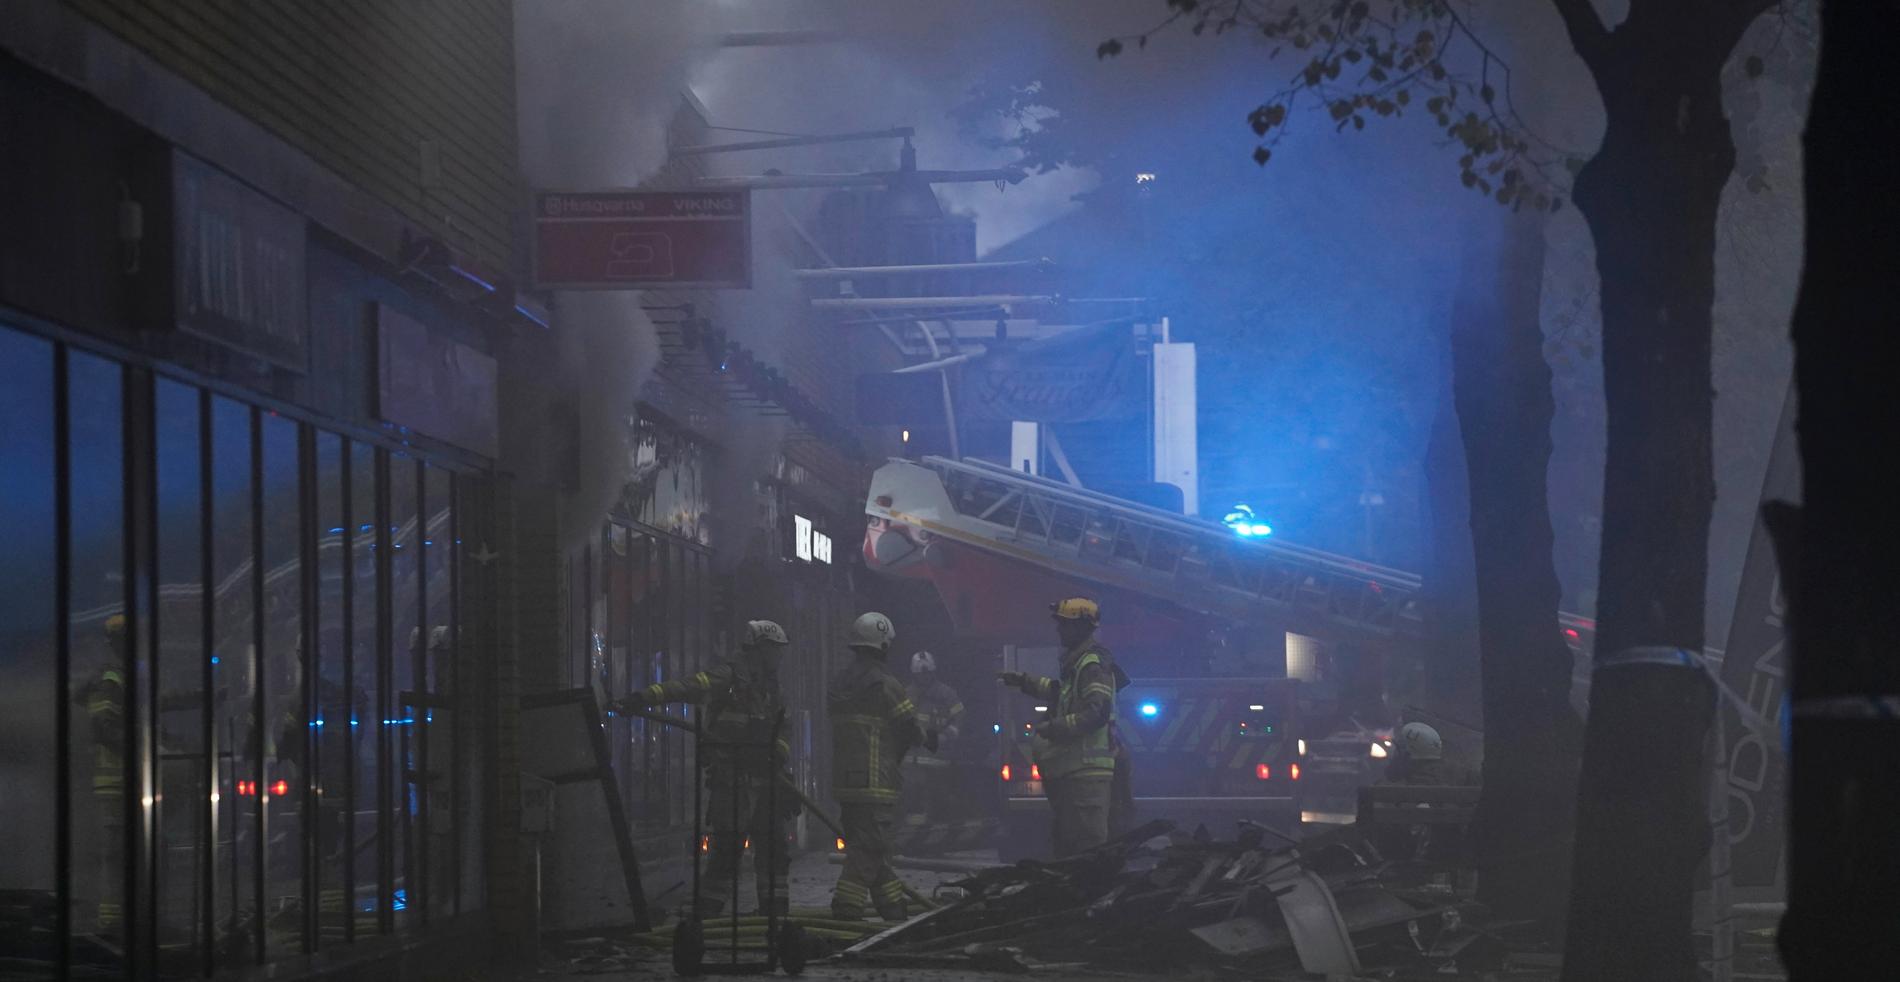 Bild från Övre Husargatan strax efter den kraftiga explosionen.